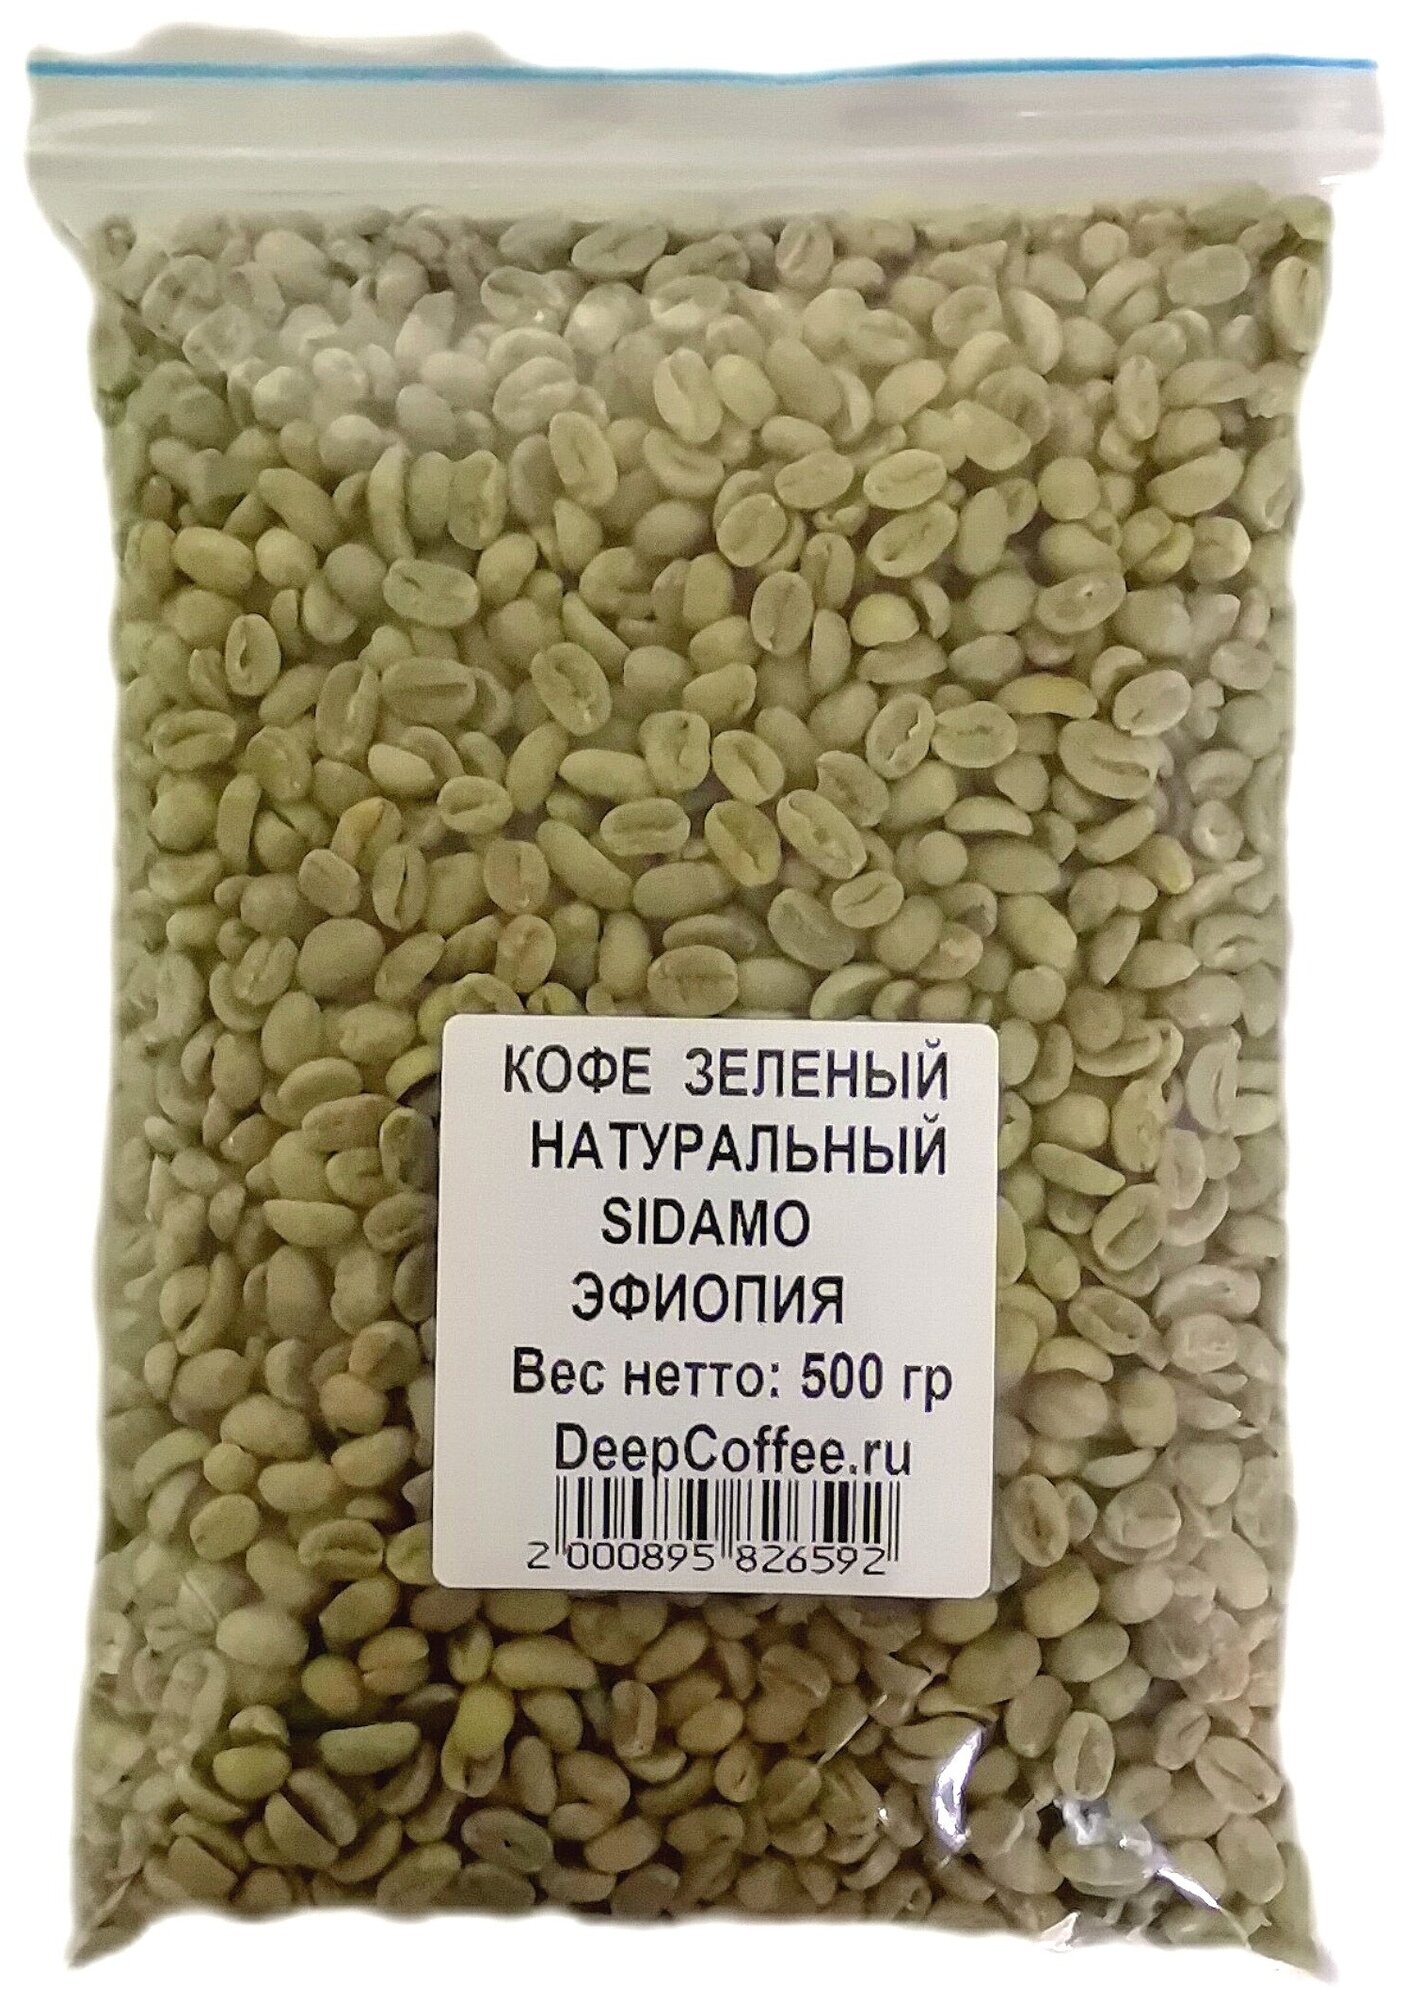 Кофе зеленый необжаренный SIDAMO Арабика Эфиопия 500гр. — купить в интернет-магазине по низкой цене на Яндекс Маркете